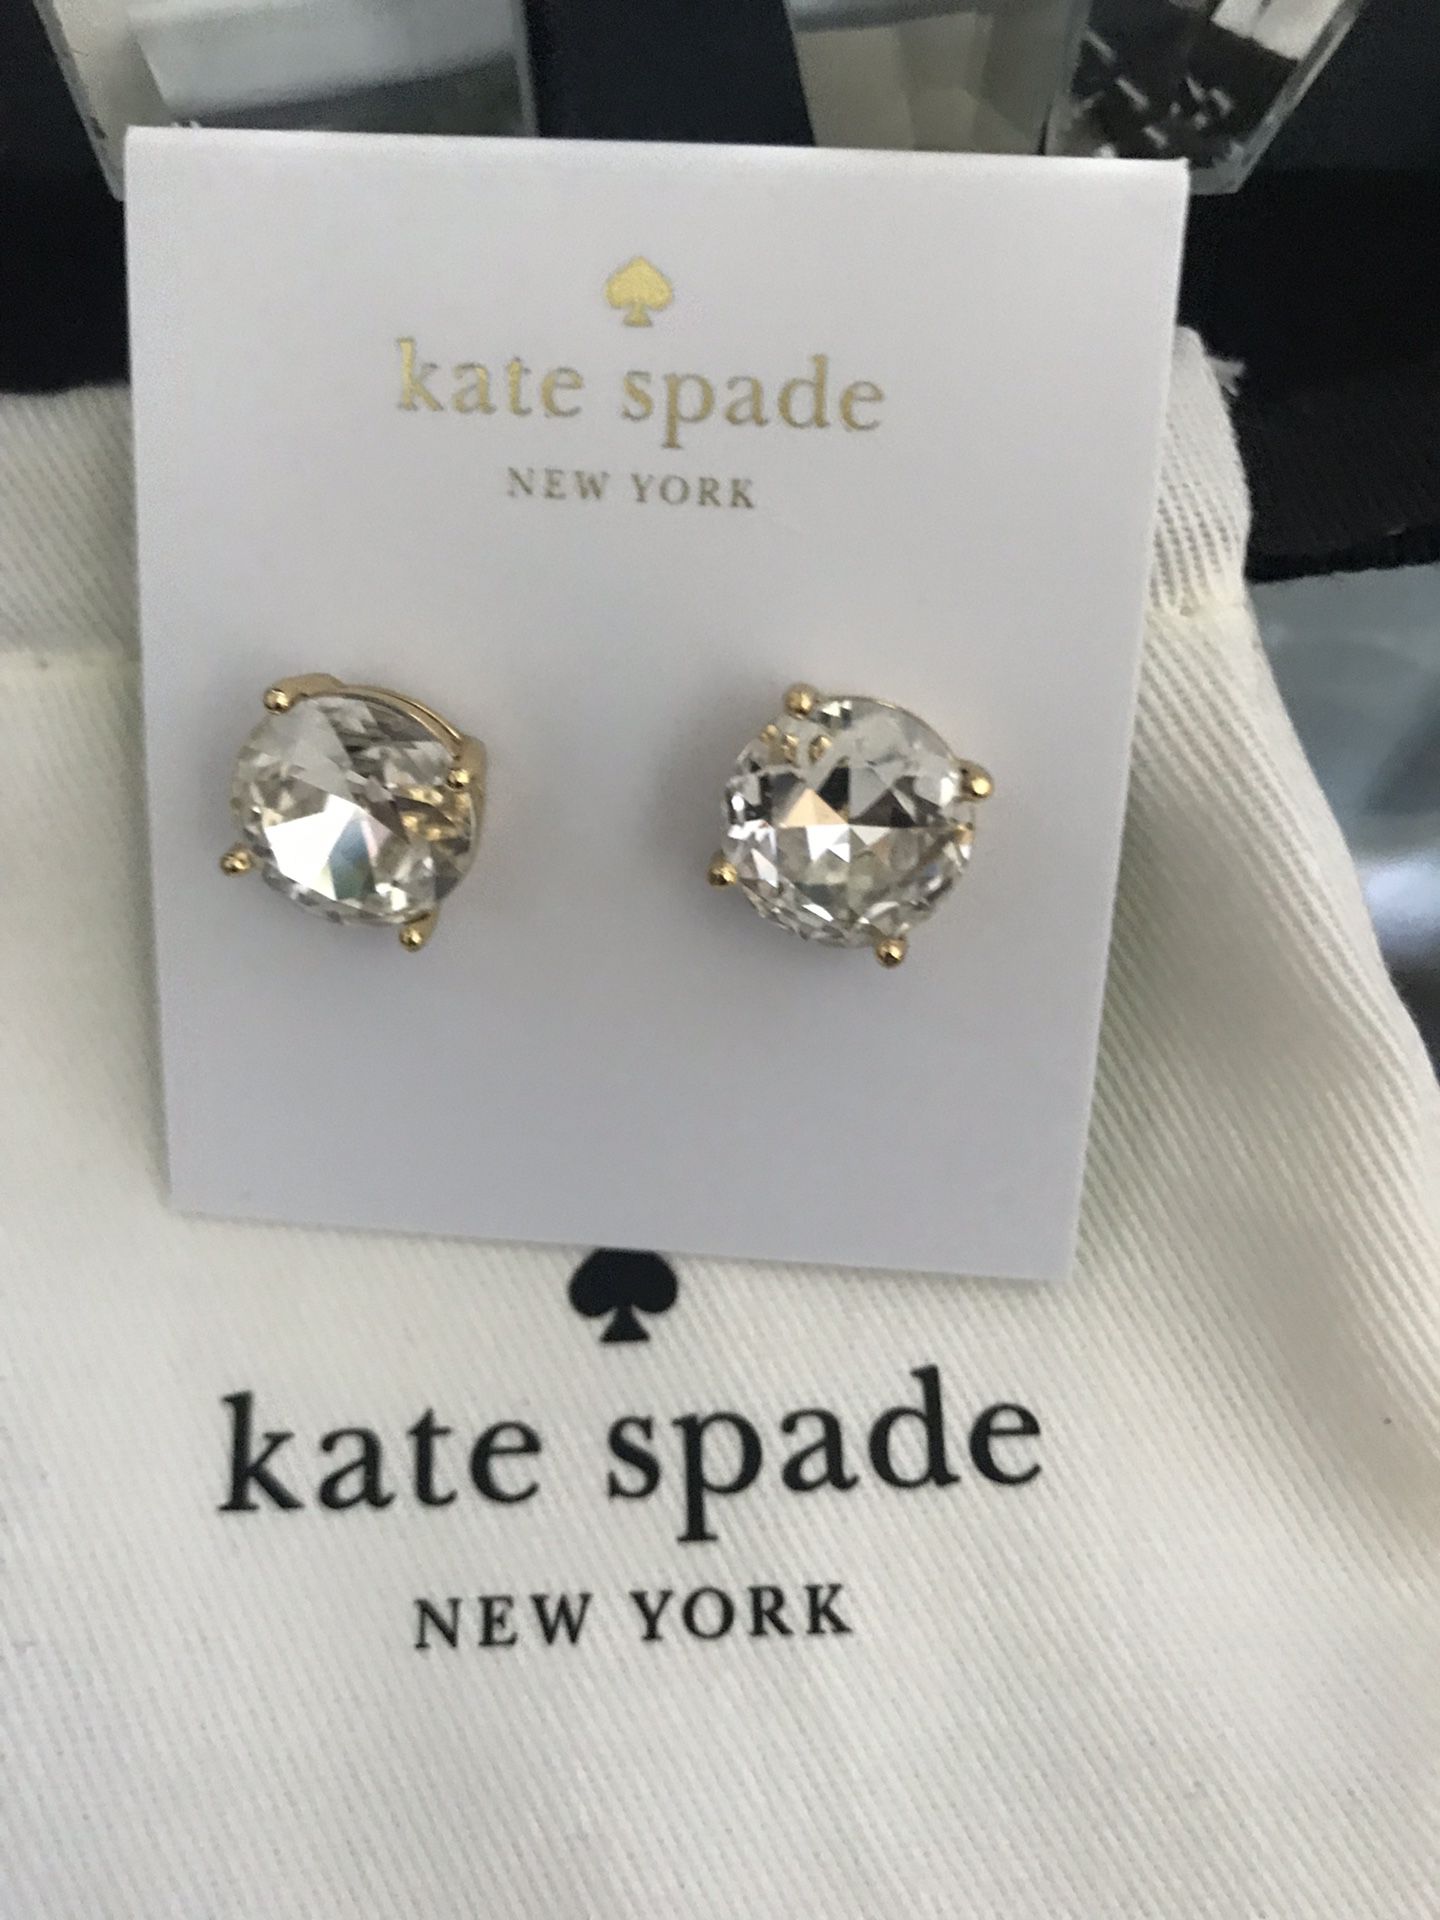 Kate spade earrings